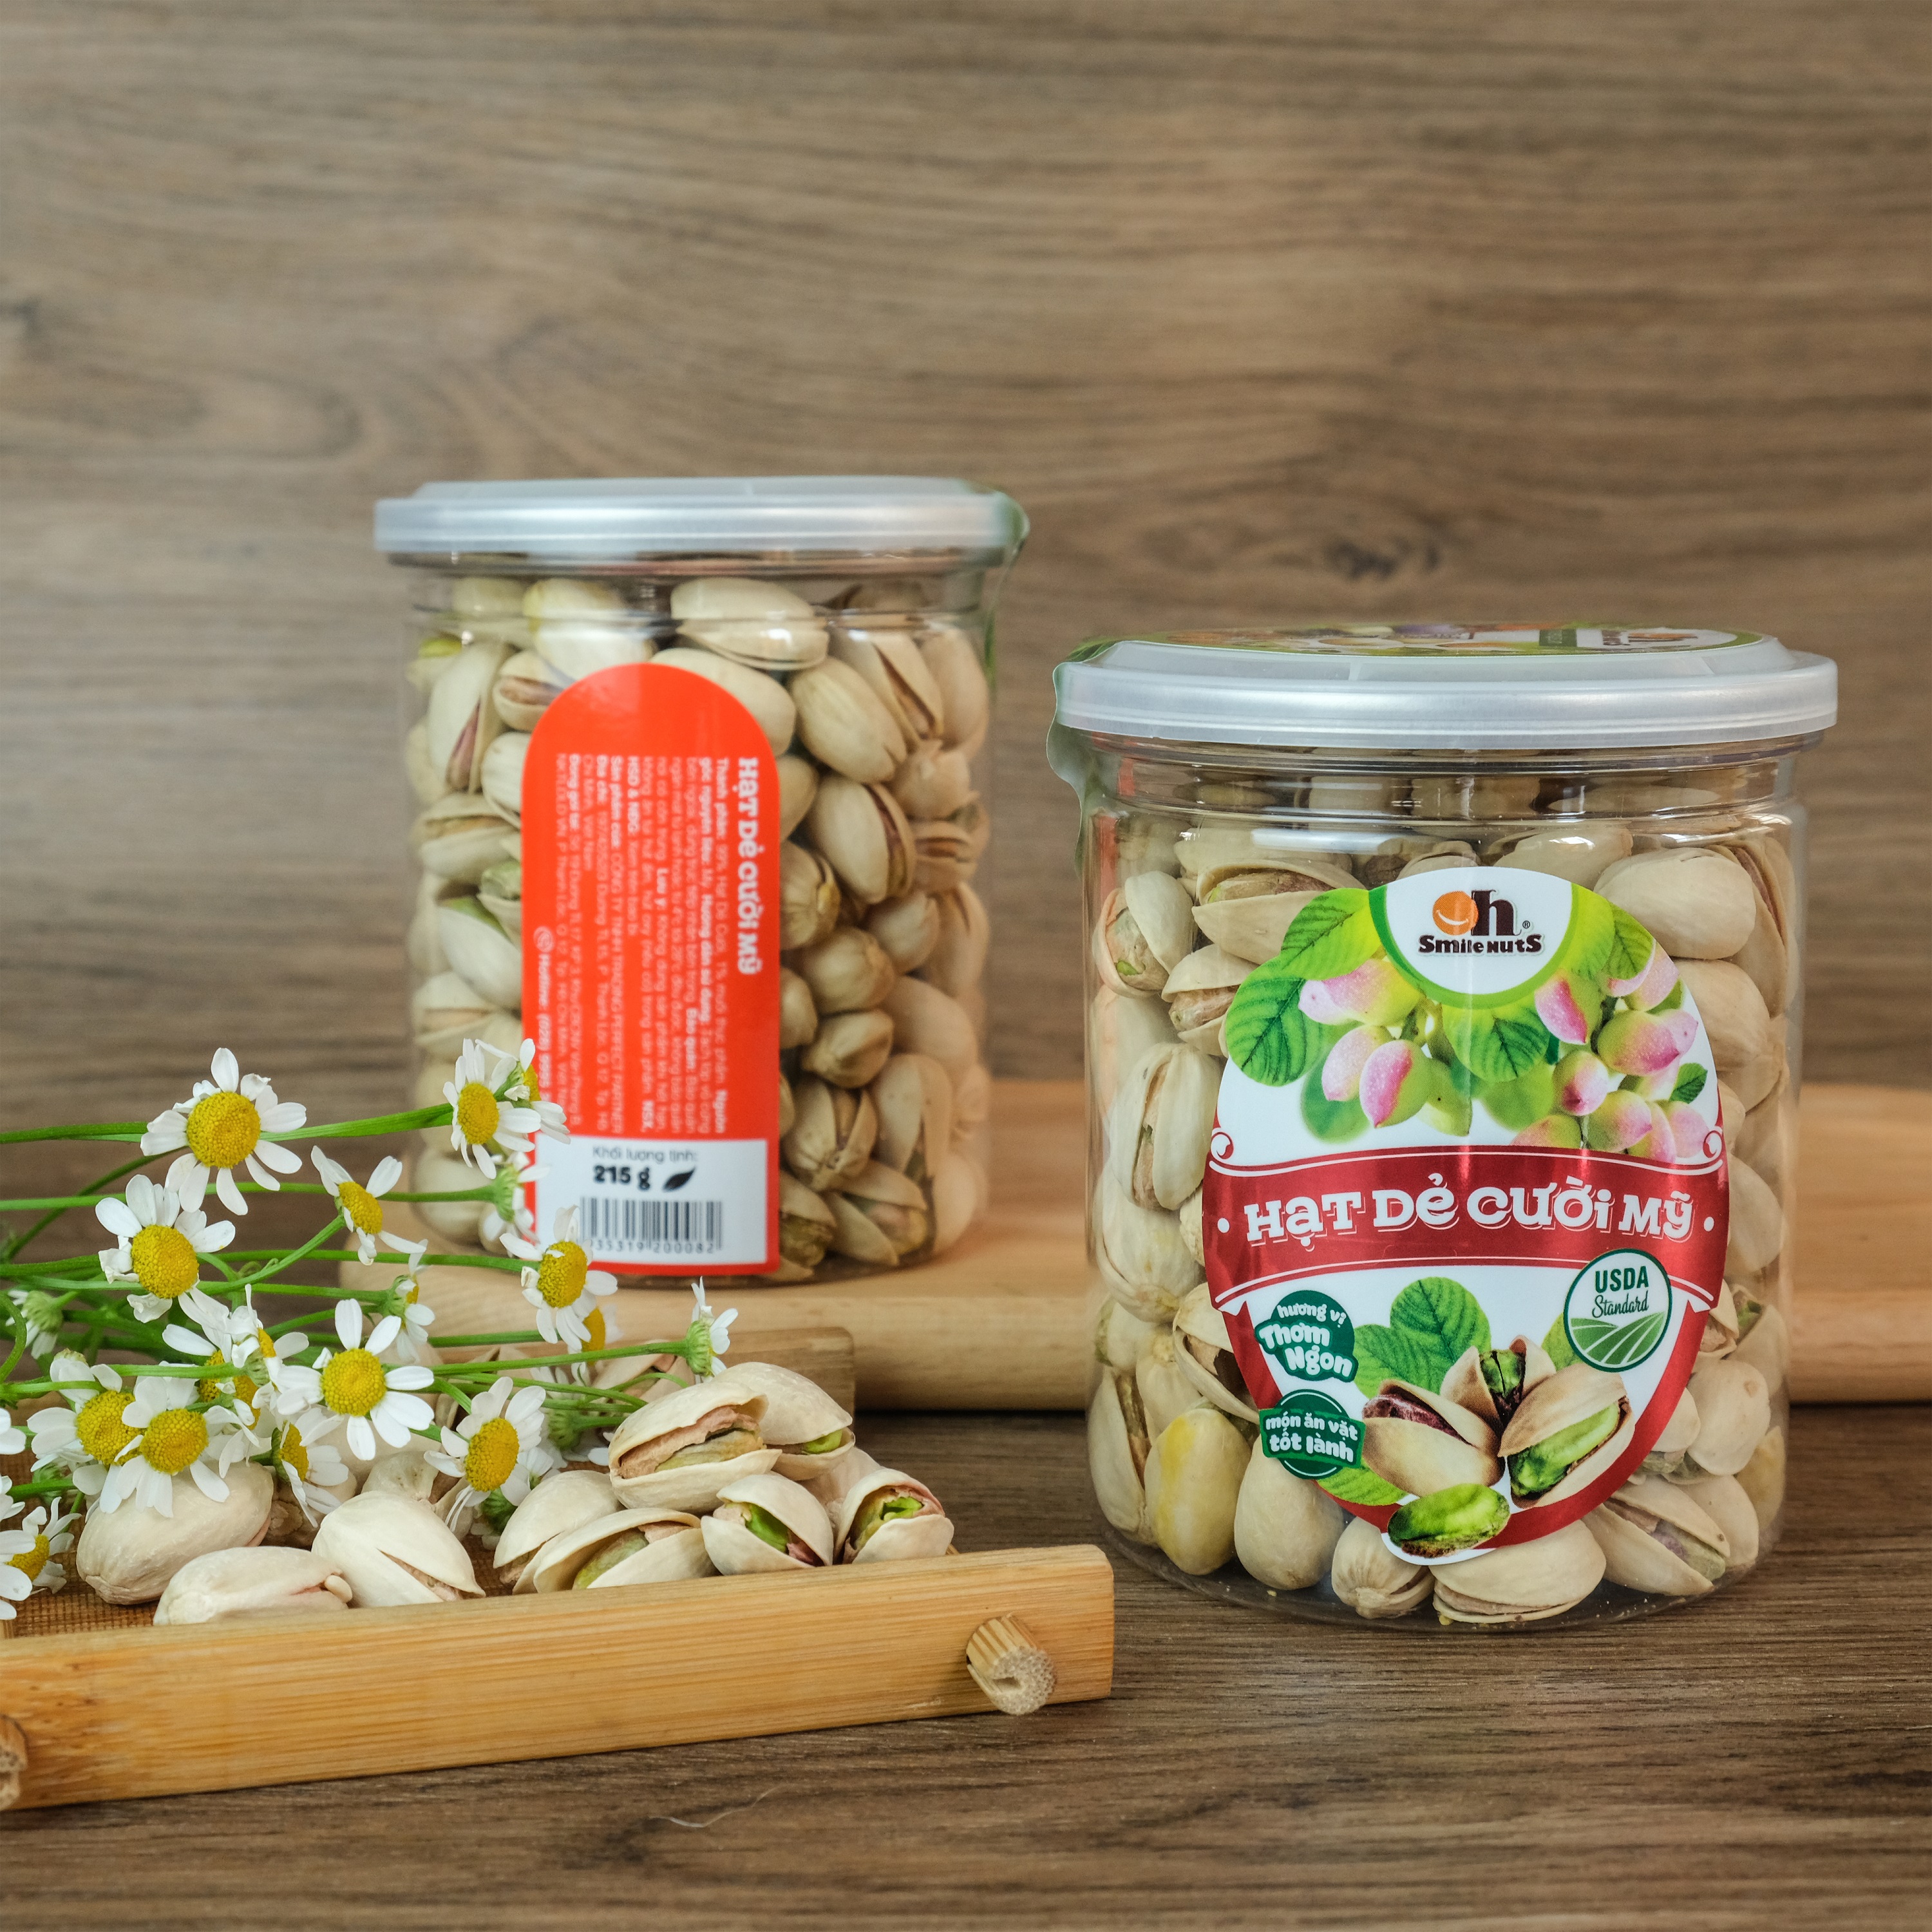 Hạt Dẻ Cười Mỹ Smile Nuts (215g - 500g) | 100% Nhập khẩu từ Mỹ, không tẩy trắng - Dẻ cười rang muối vừa ăn, thơm ngon, giòn rụm